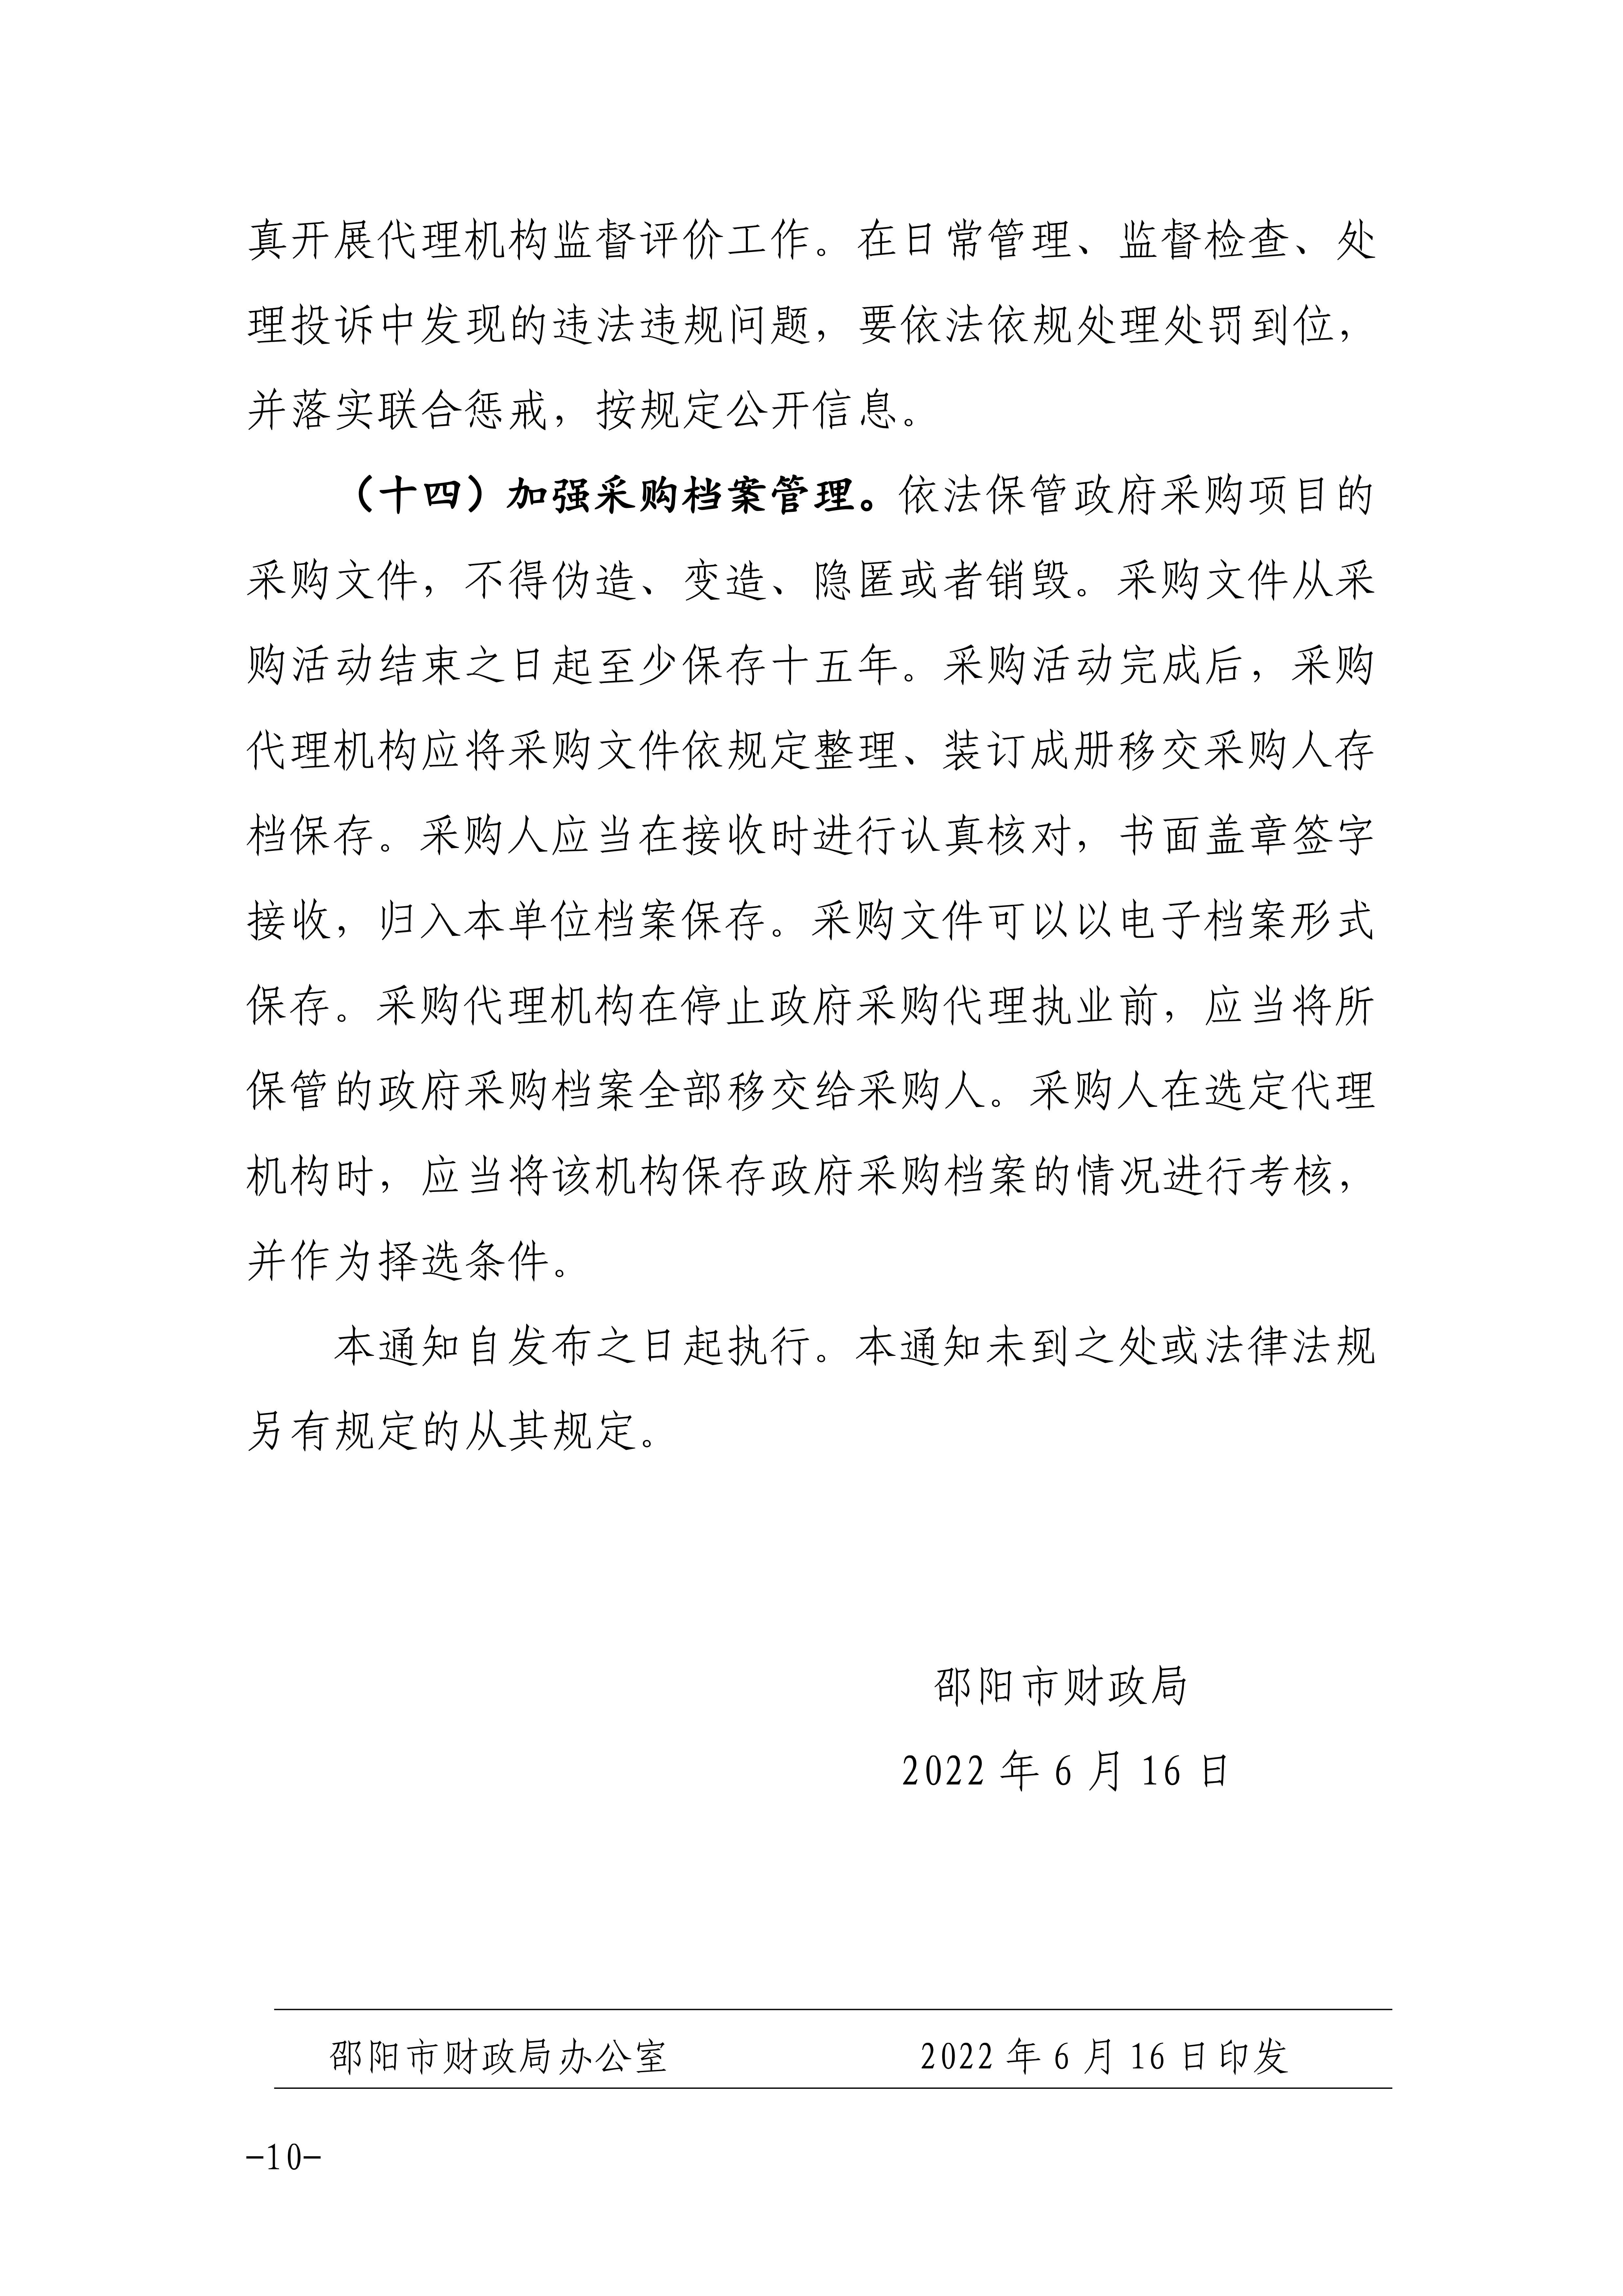 邵阳市关于进一步加强政府采购工作的通知_09.png